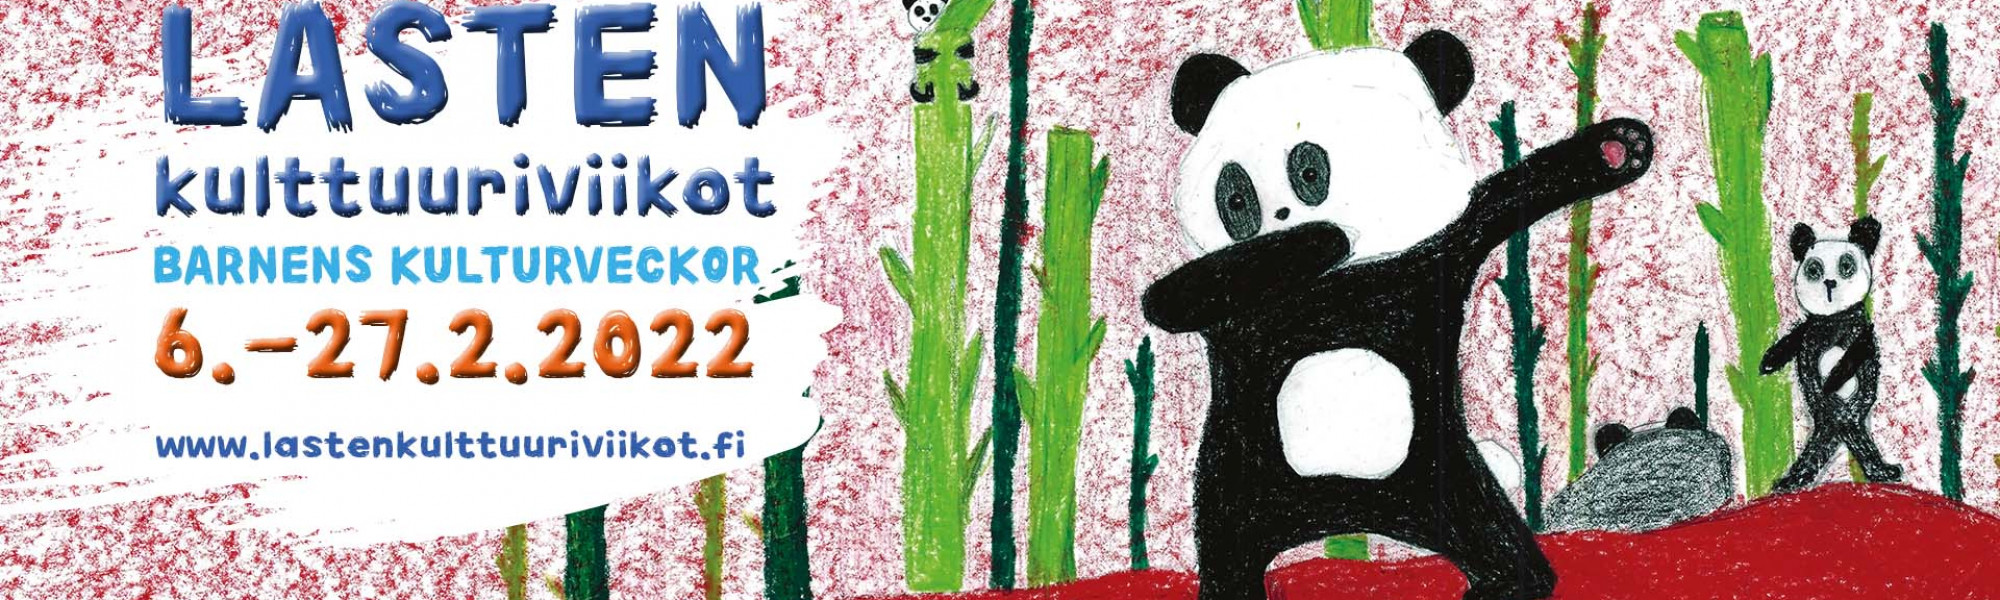 Piirustus, jossa on pandoja ja tekstissä tapahtuman tietoja..